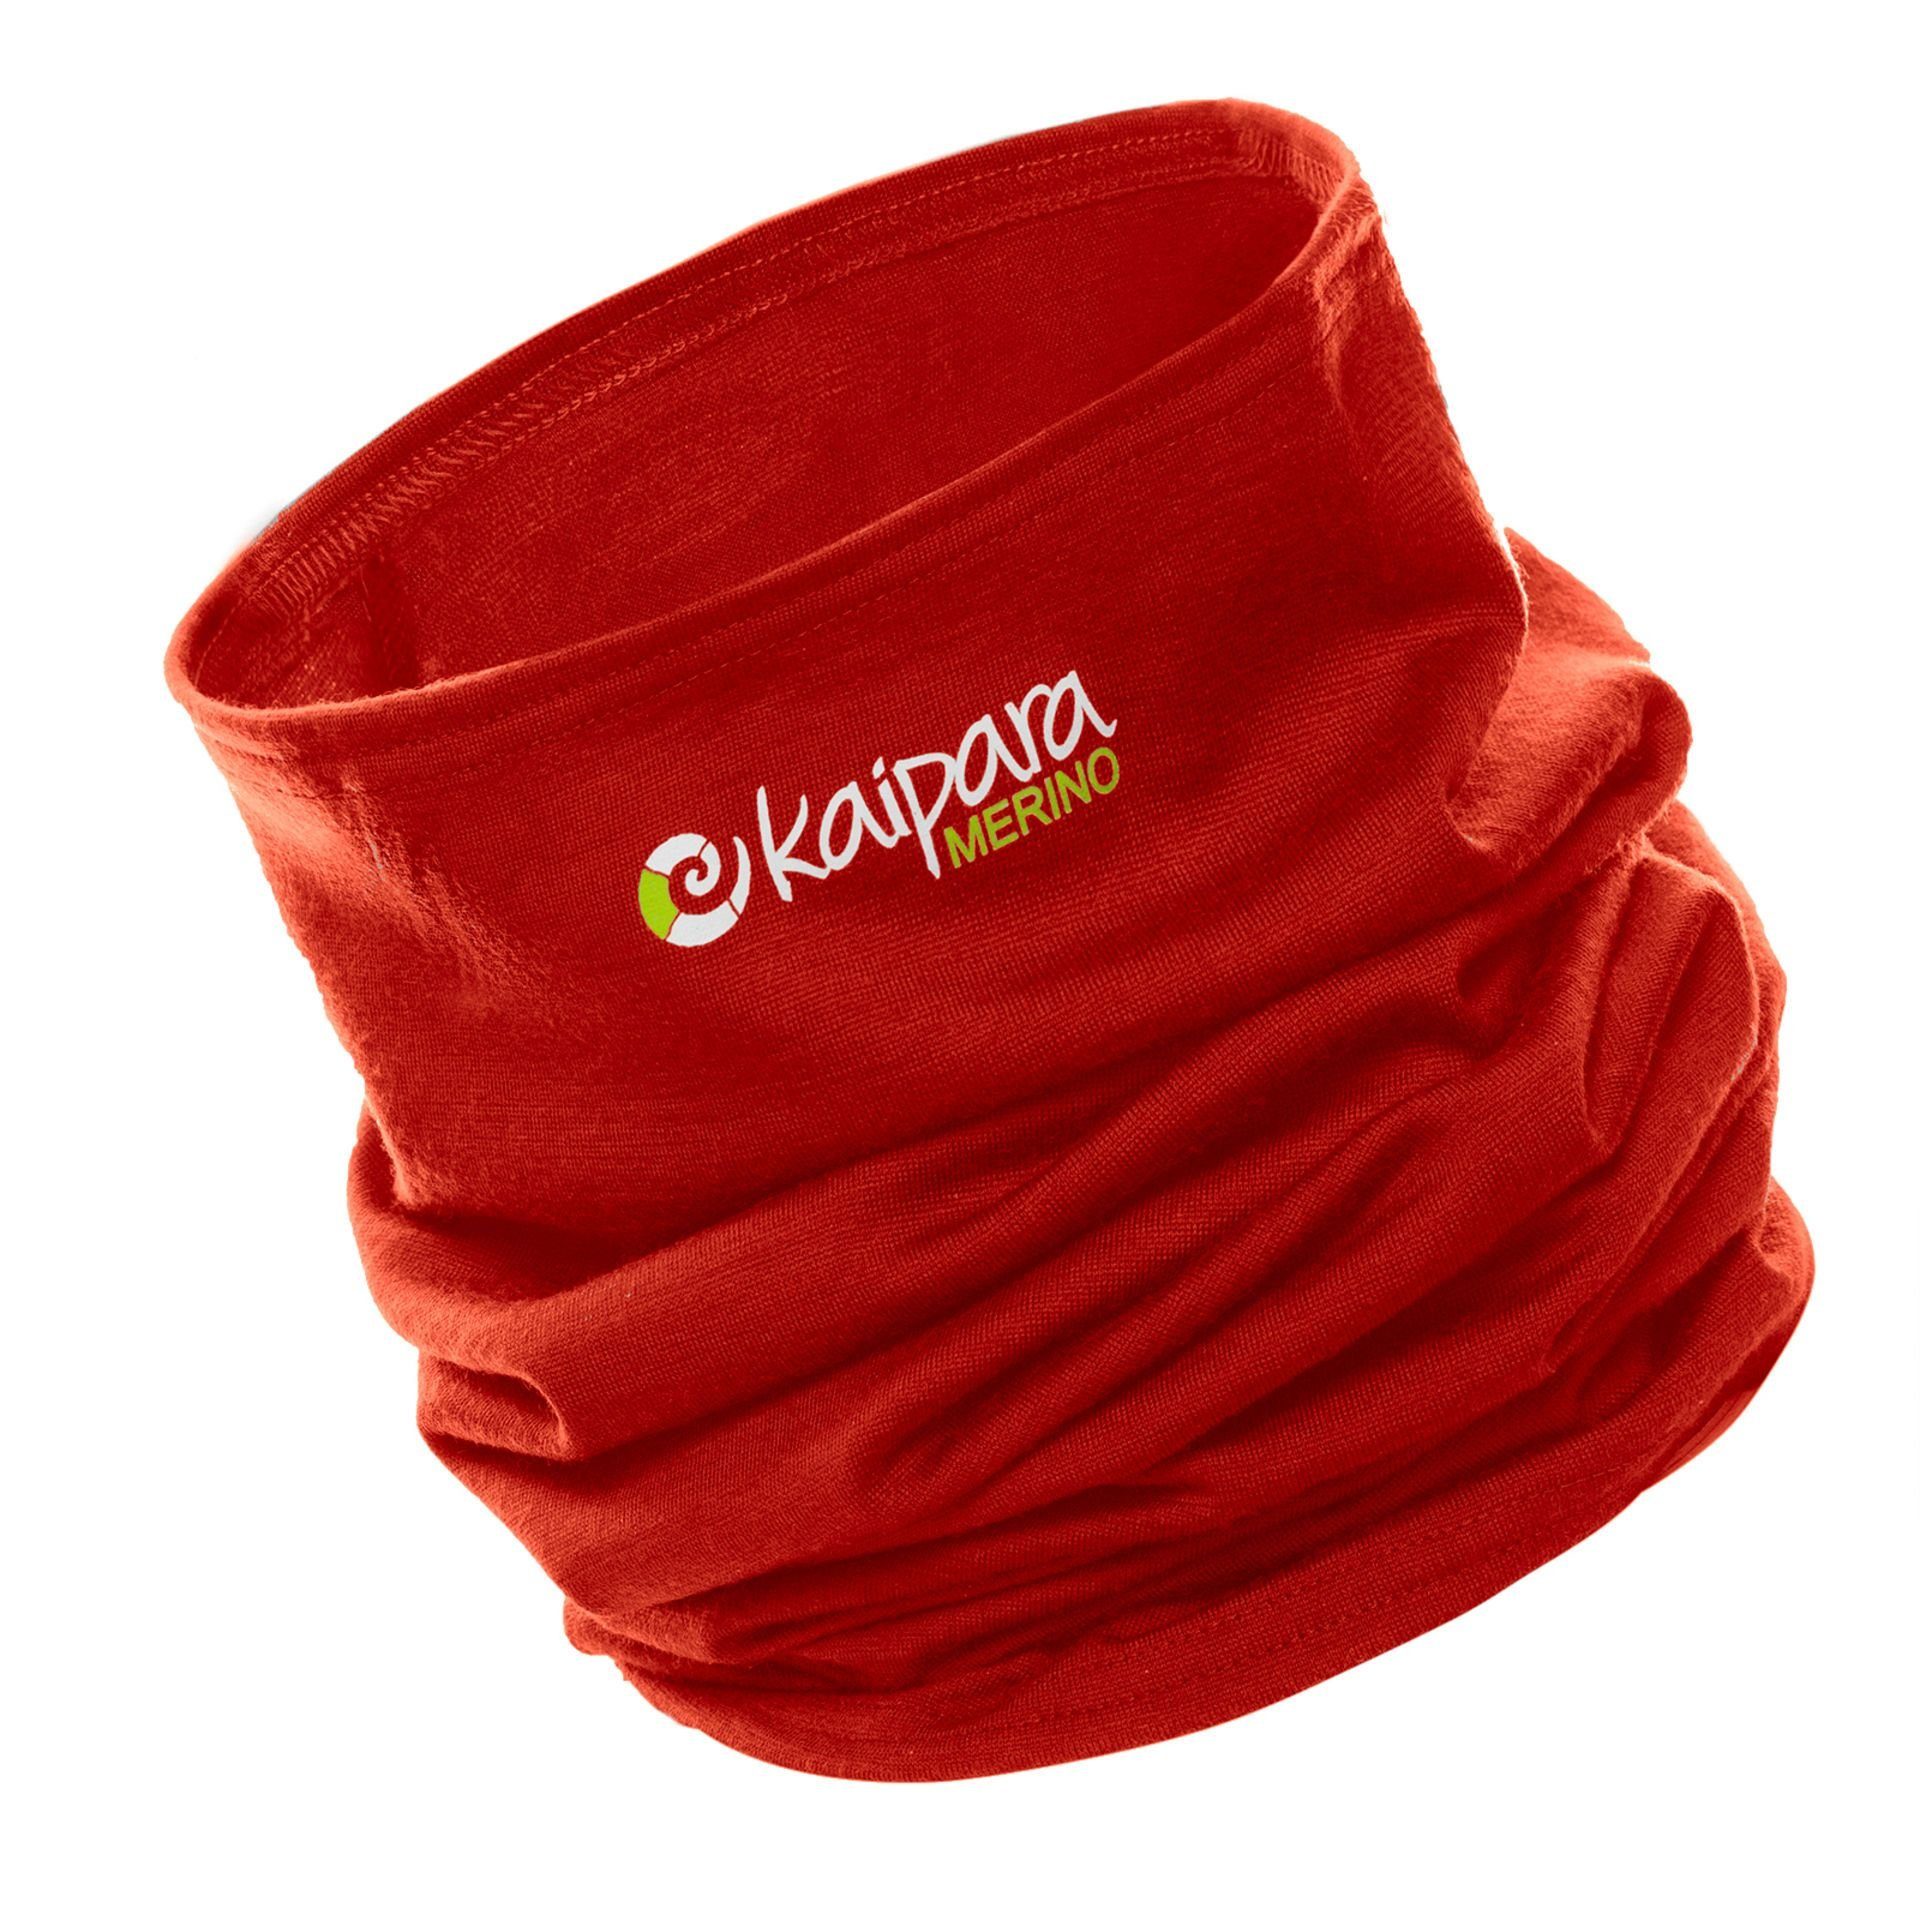 Kaipara - Merino Sportswear in Bandana Made Red Schal reiner Cherry 200, Merinowolle Merino aus Unisex Germany